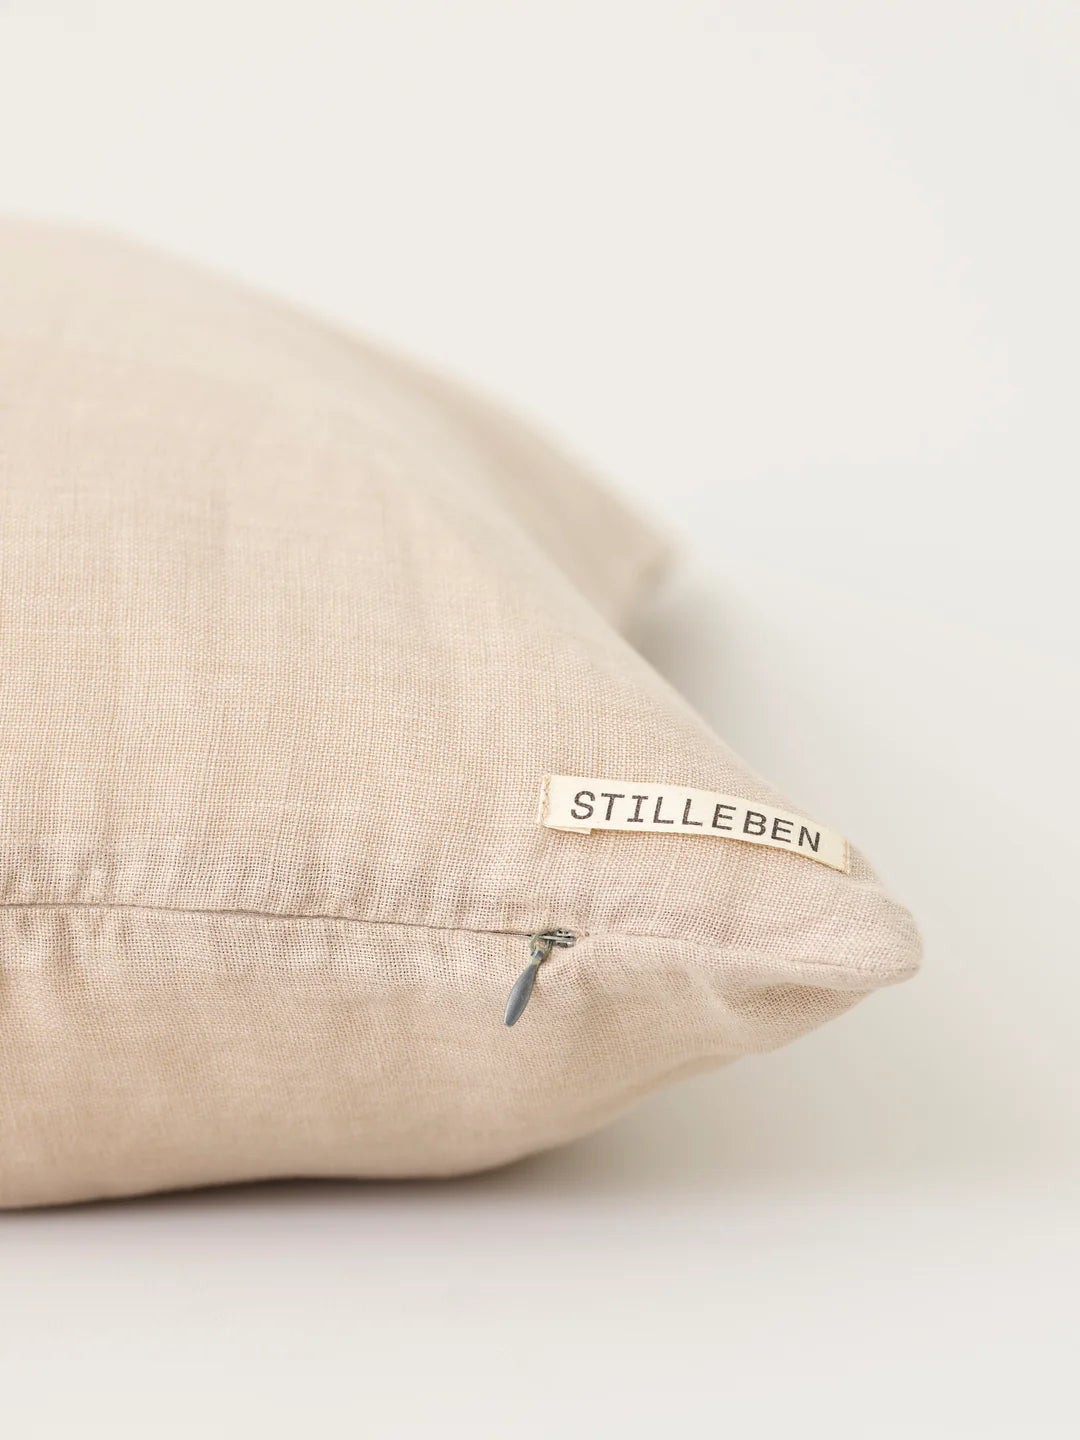 Cushion Cover - 50 x 50 cm - Almond